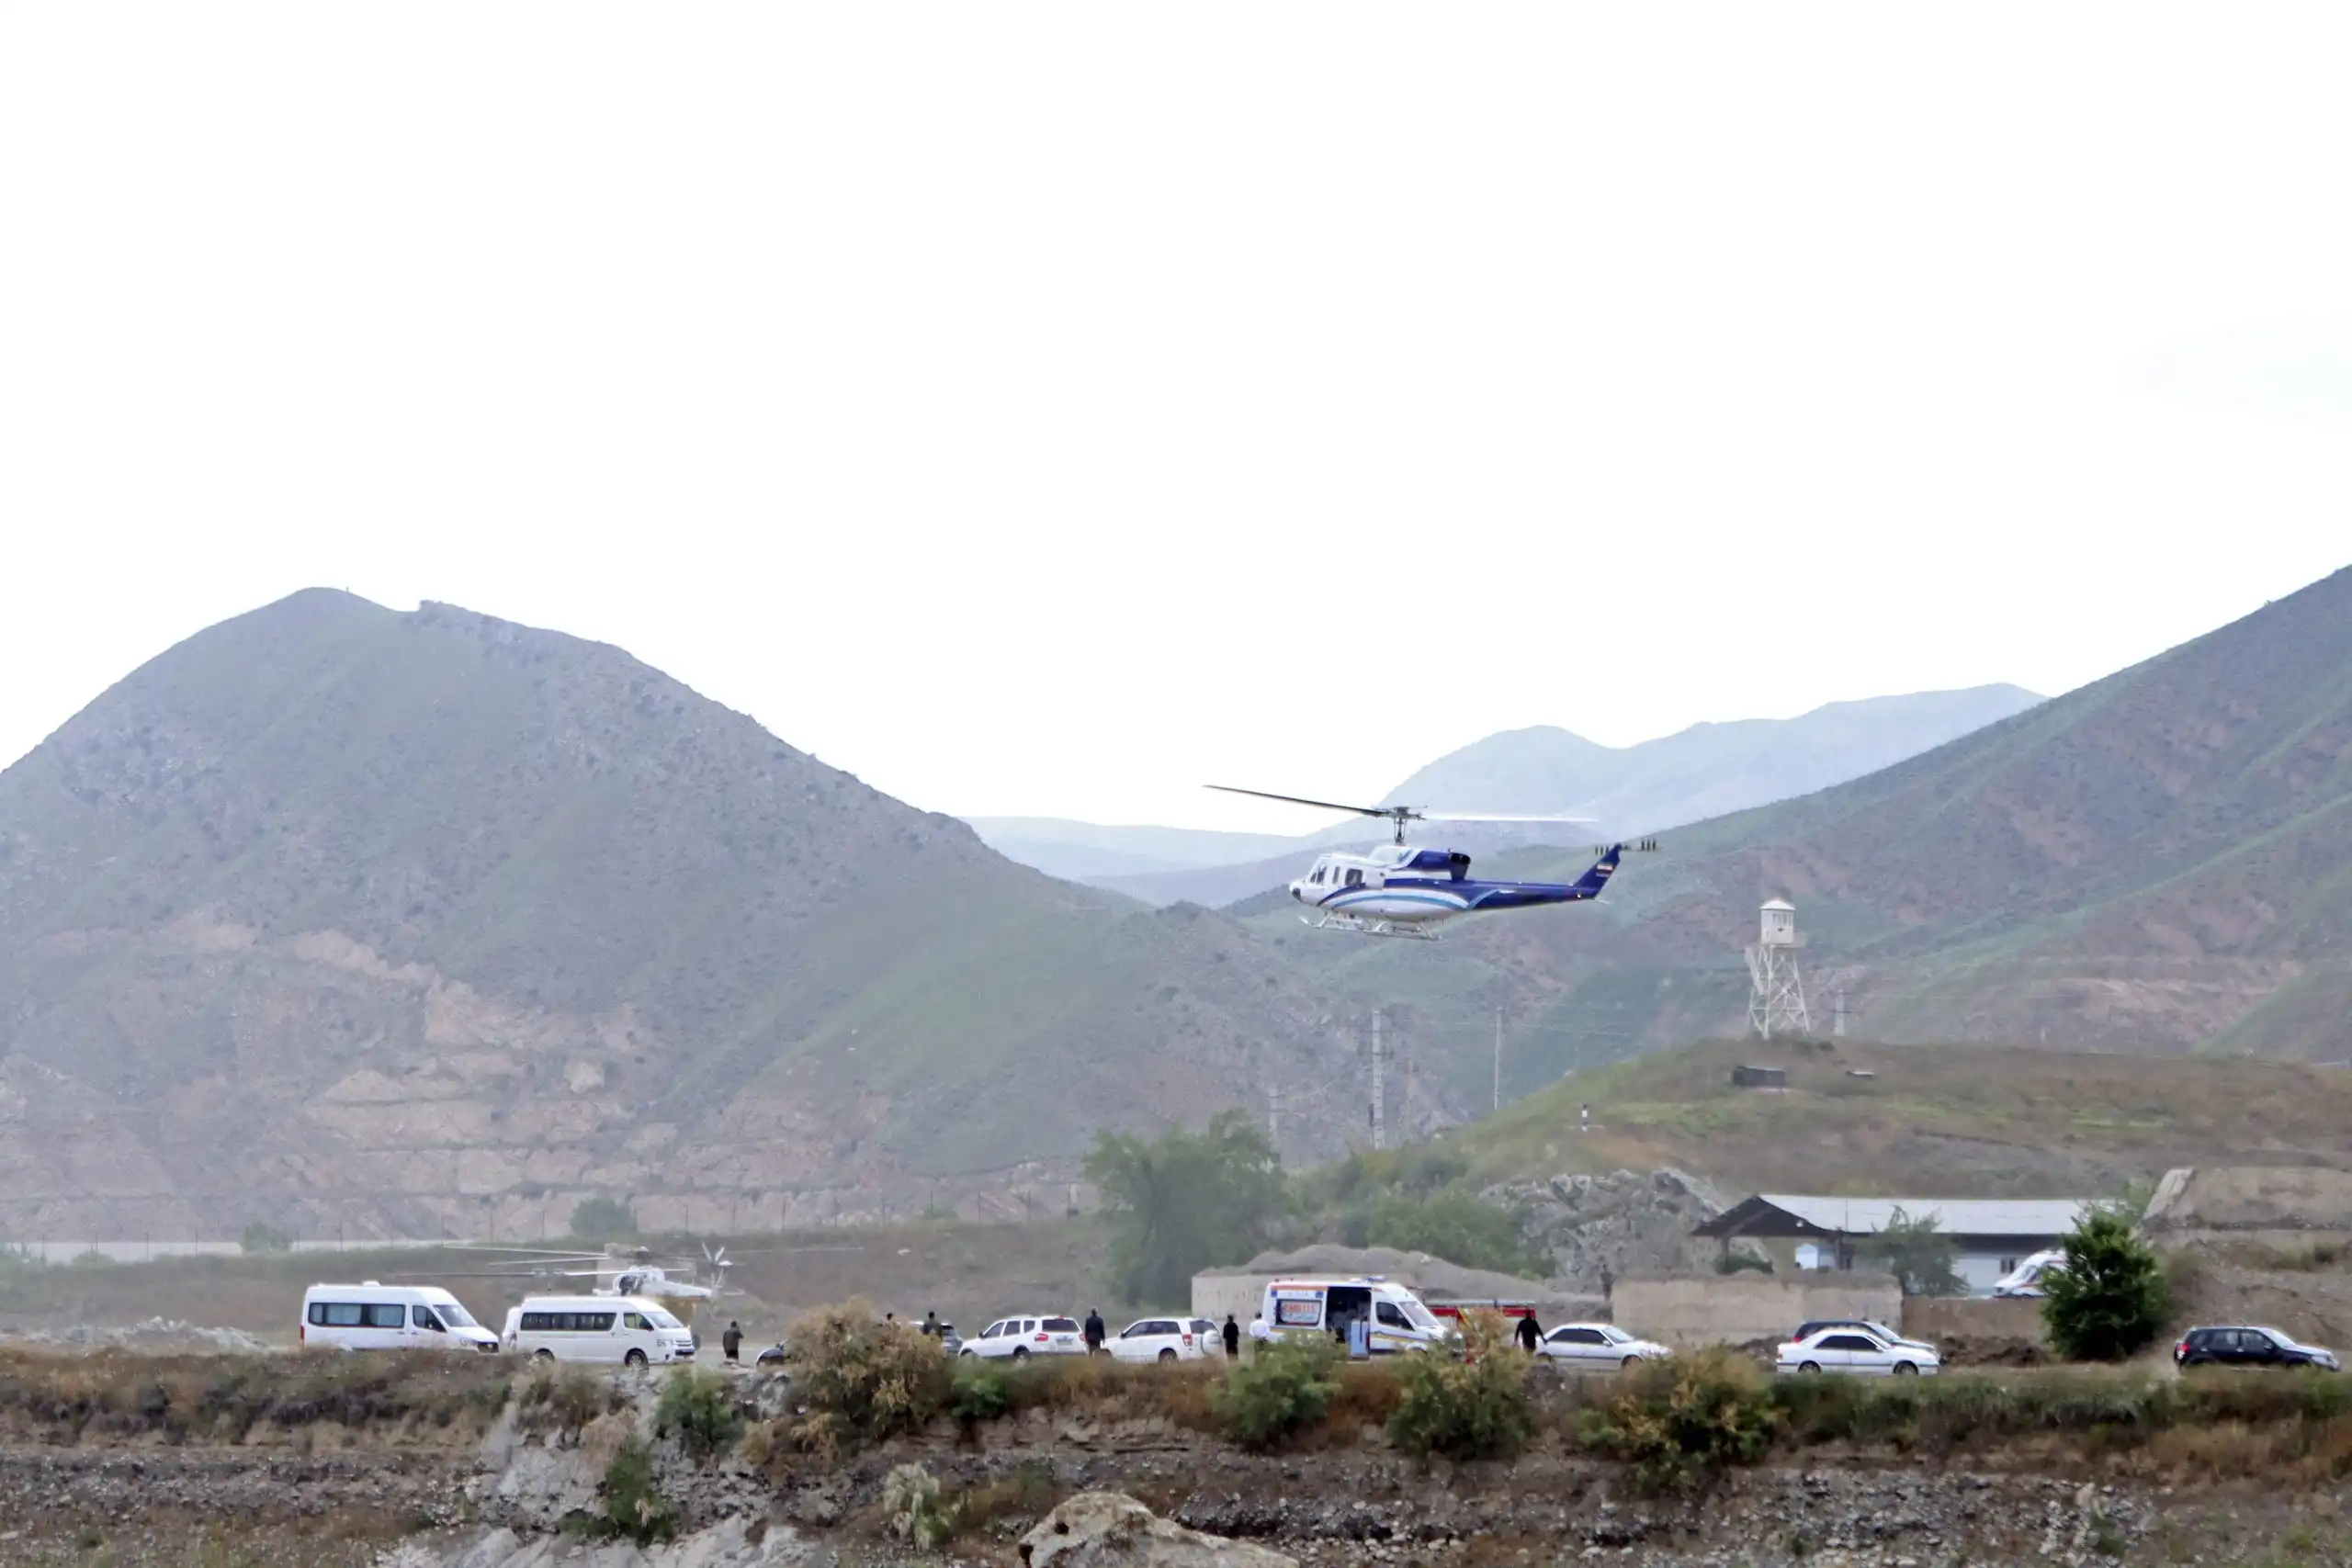 El helicóptero que transportaba al presidente de Irán realiza un aterrizaje forzoso, informa la televisión estatal y el rescate está en marcha